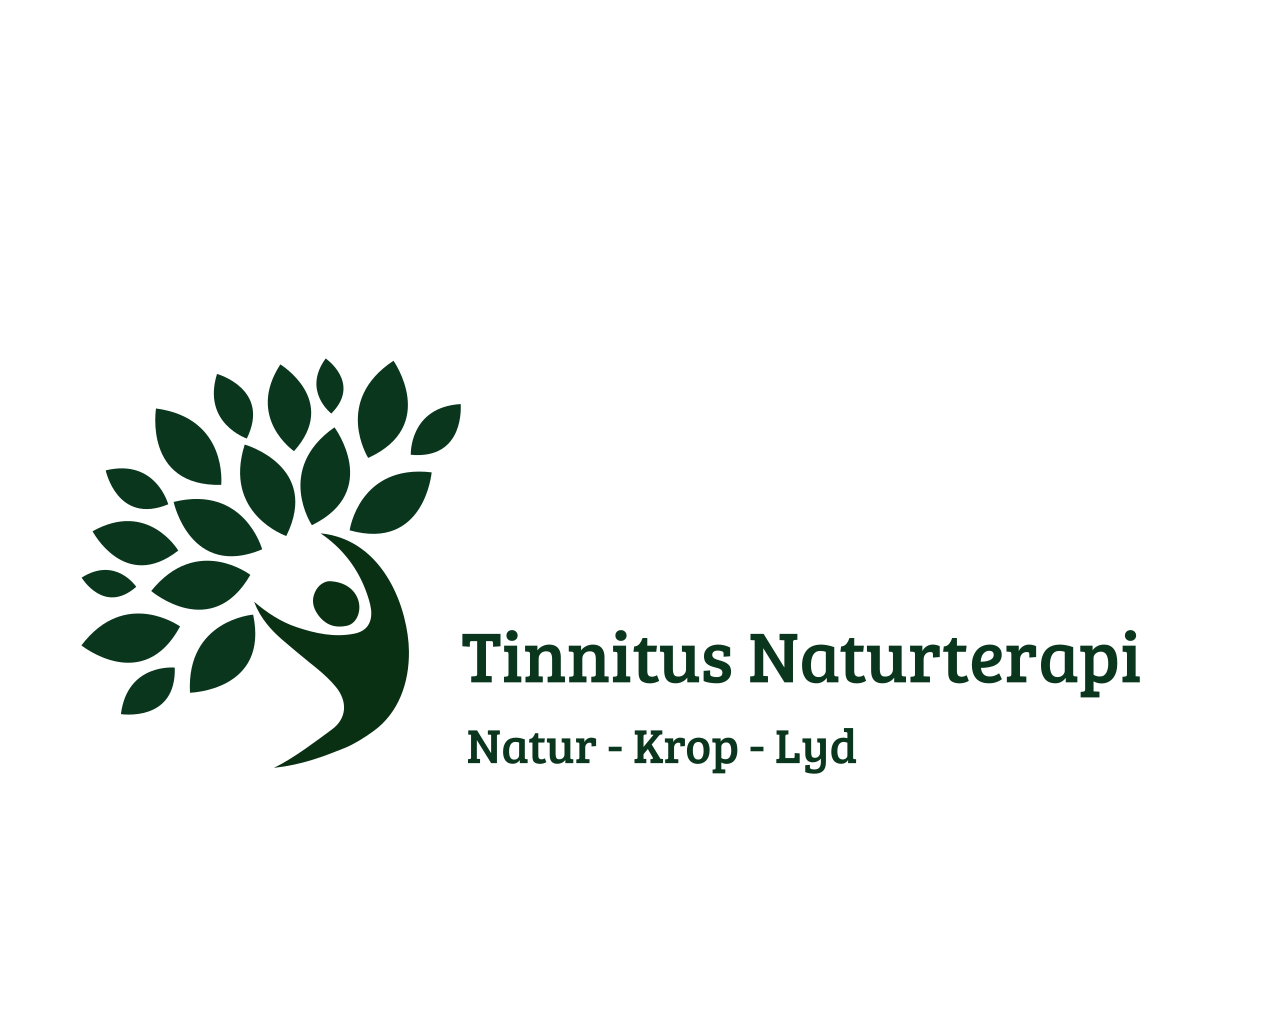 Tinnitus Naturterapi - natur - krop - lyd